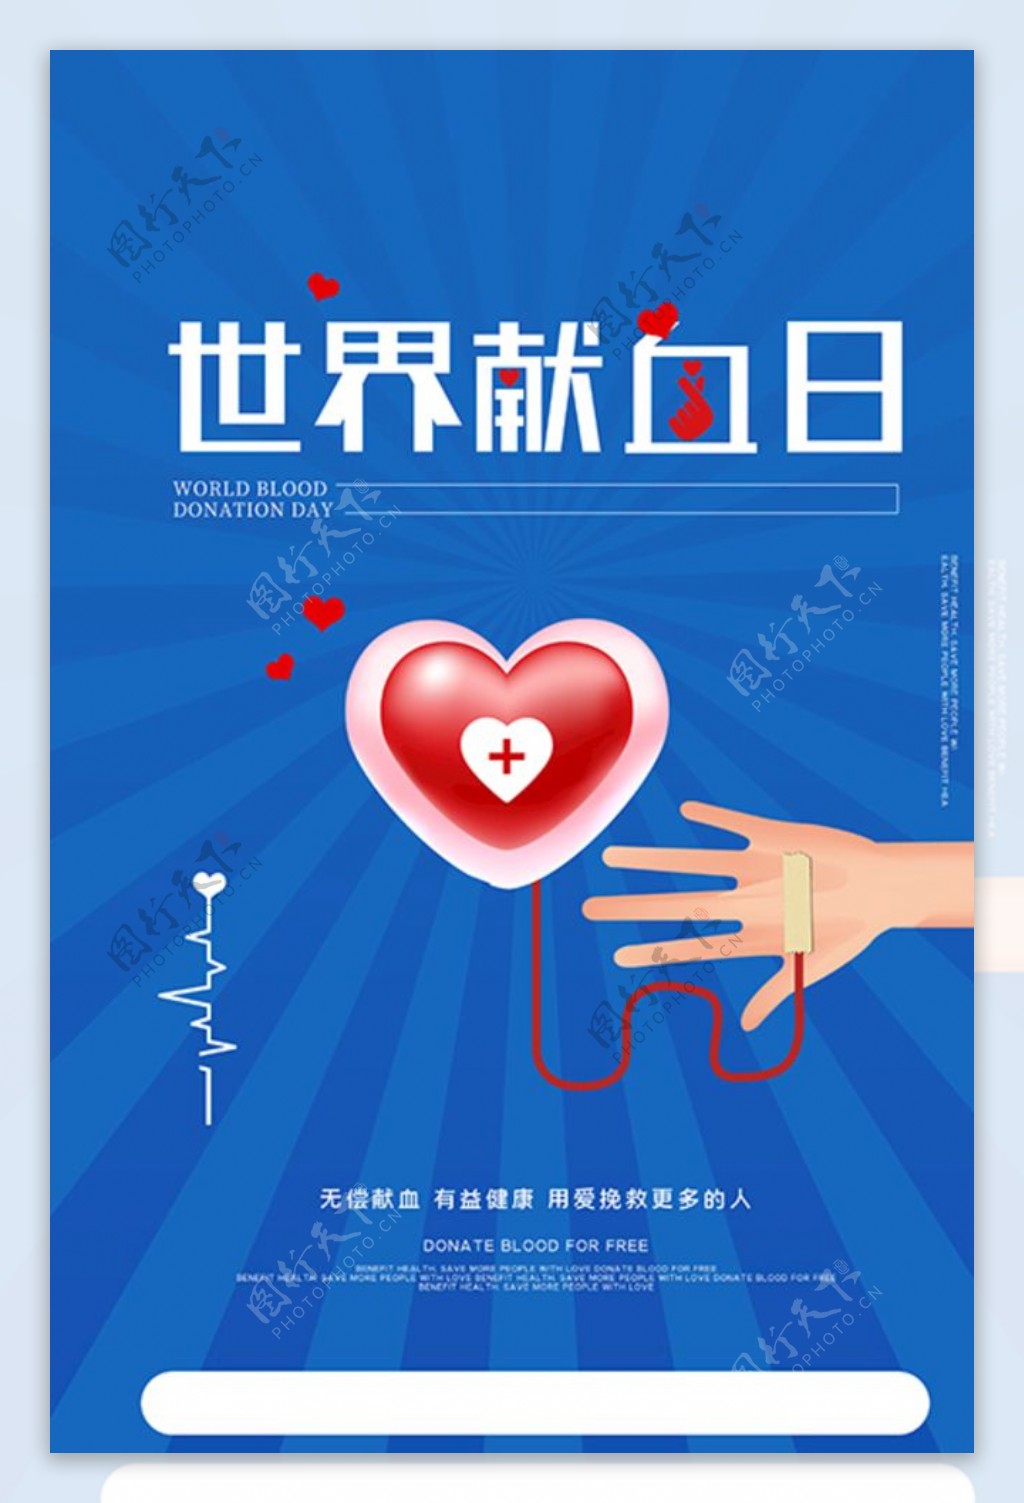 世界献血日爱心血包蓝色创意海报